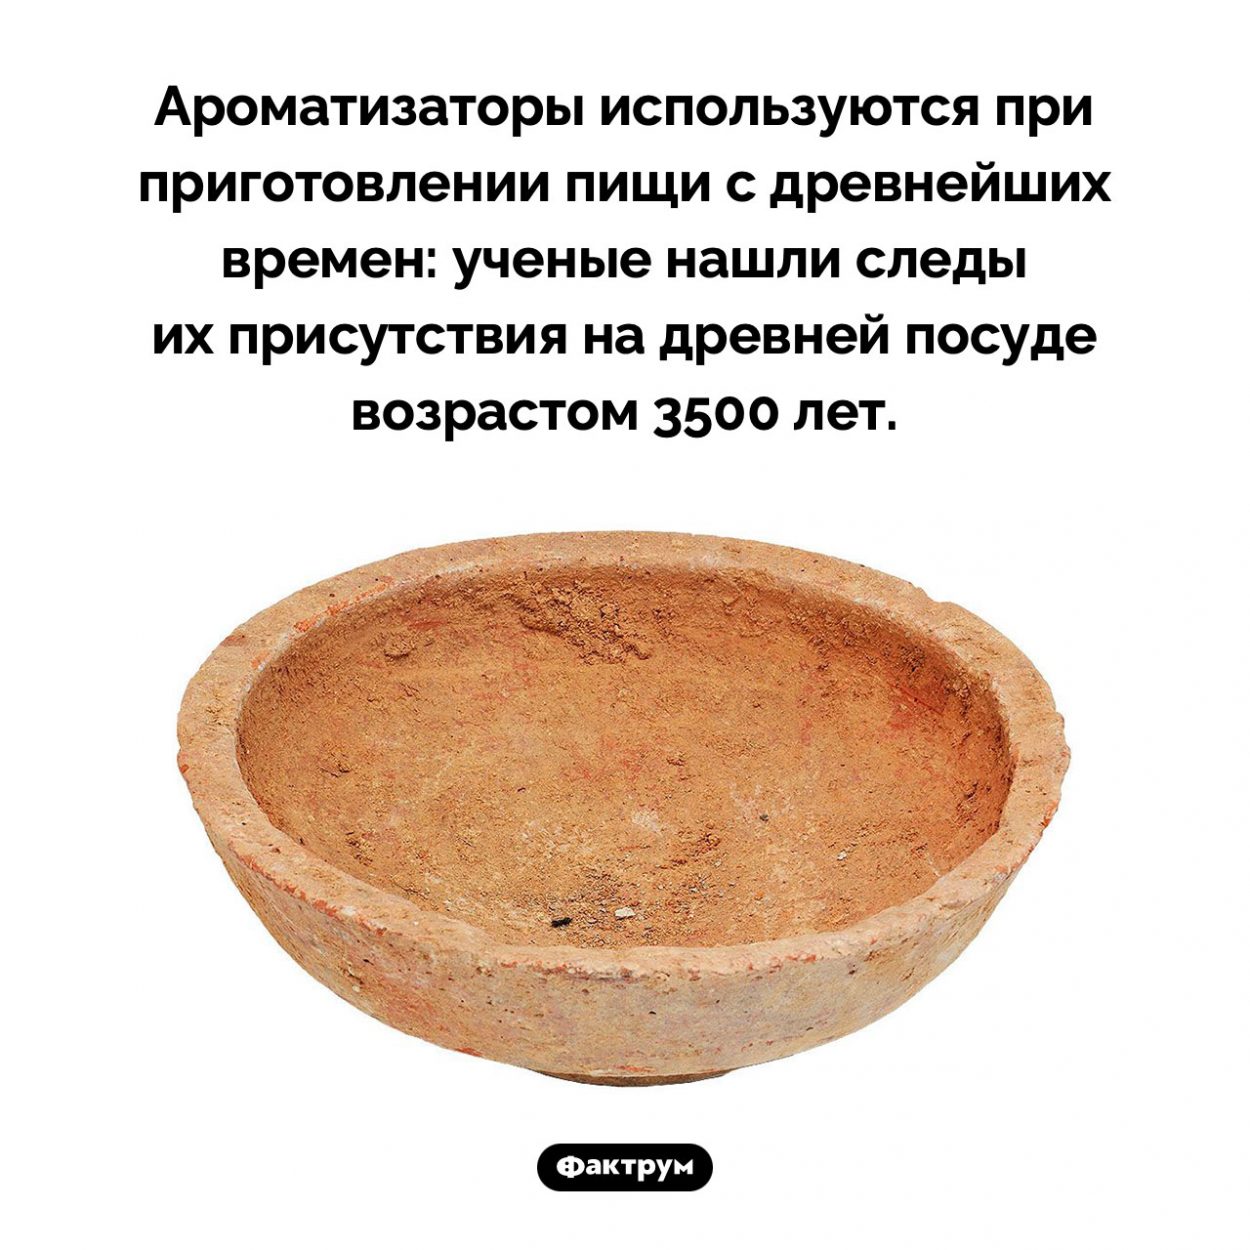 Ароматизаторы пищи известны с древнейших времен. Ароматизаторы используются при приготовлении пищи с древнейших времен: ученые нашли следы их присутствия на древней посуде возрастом 3500 лет.